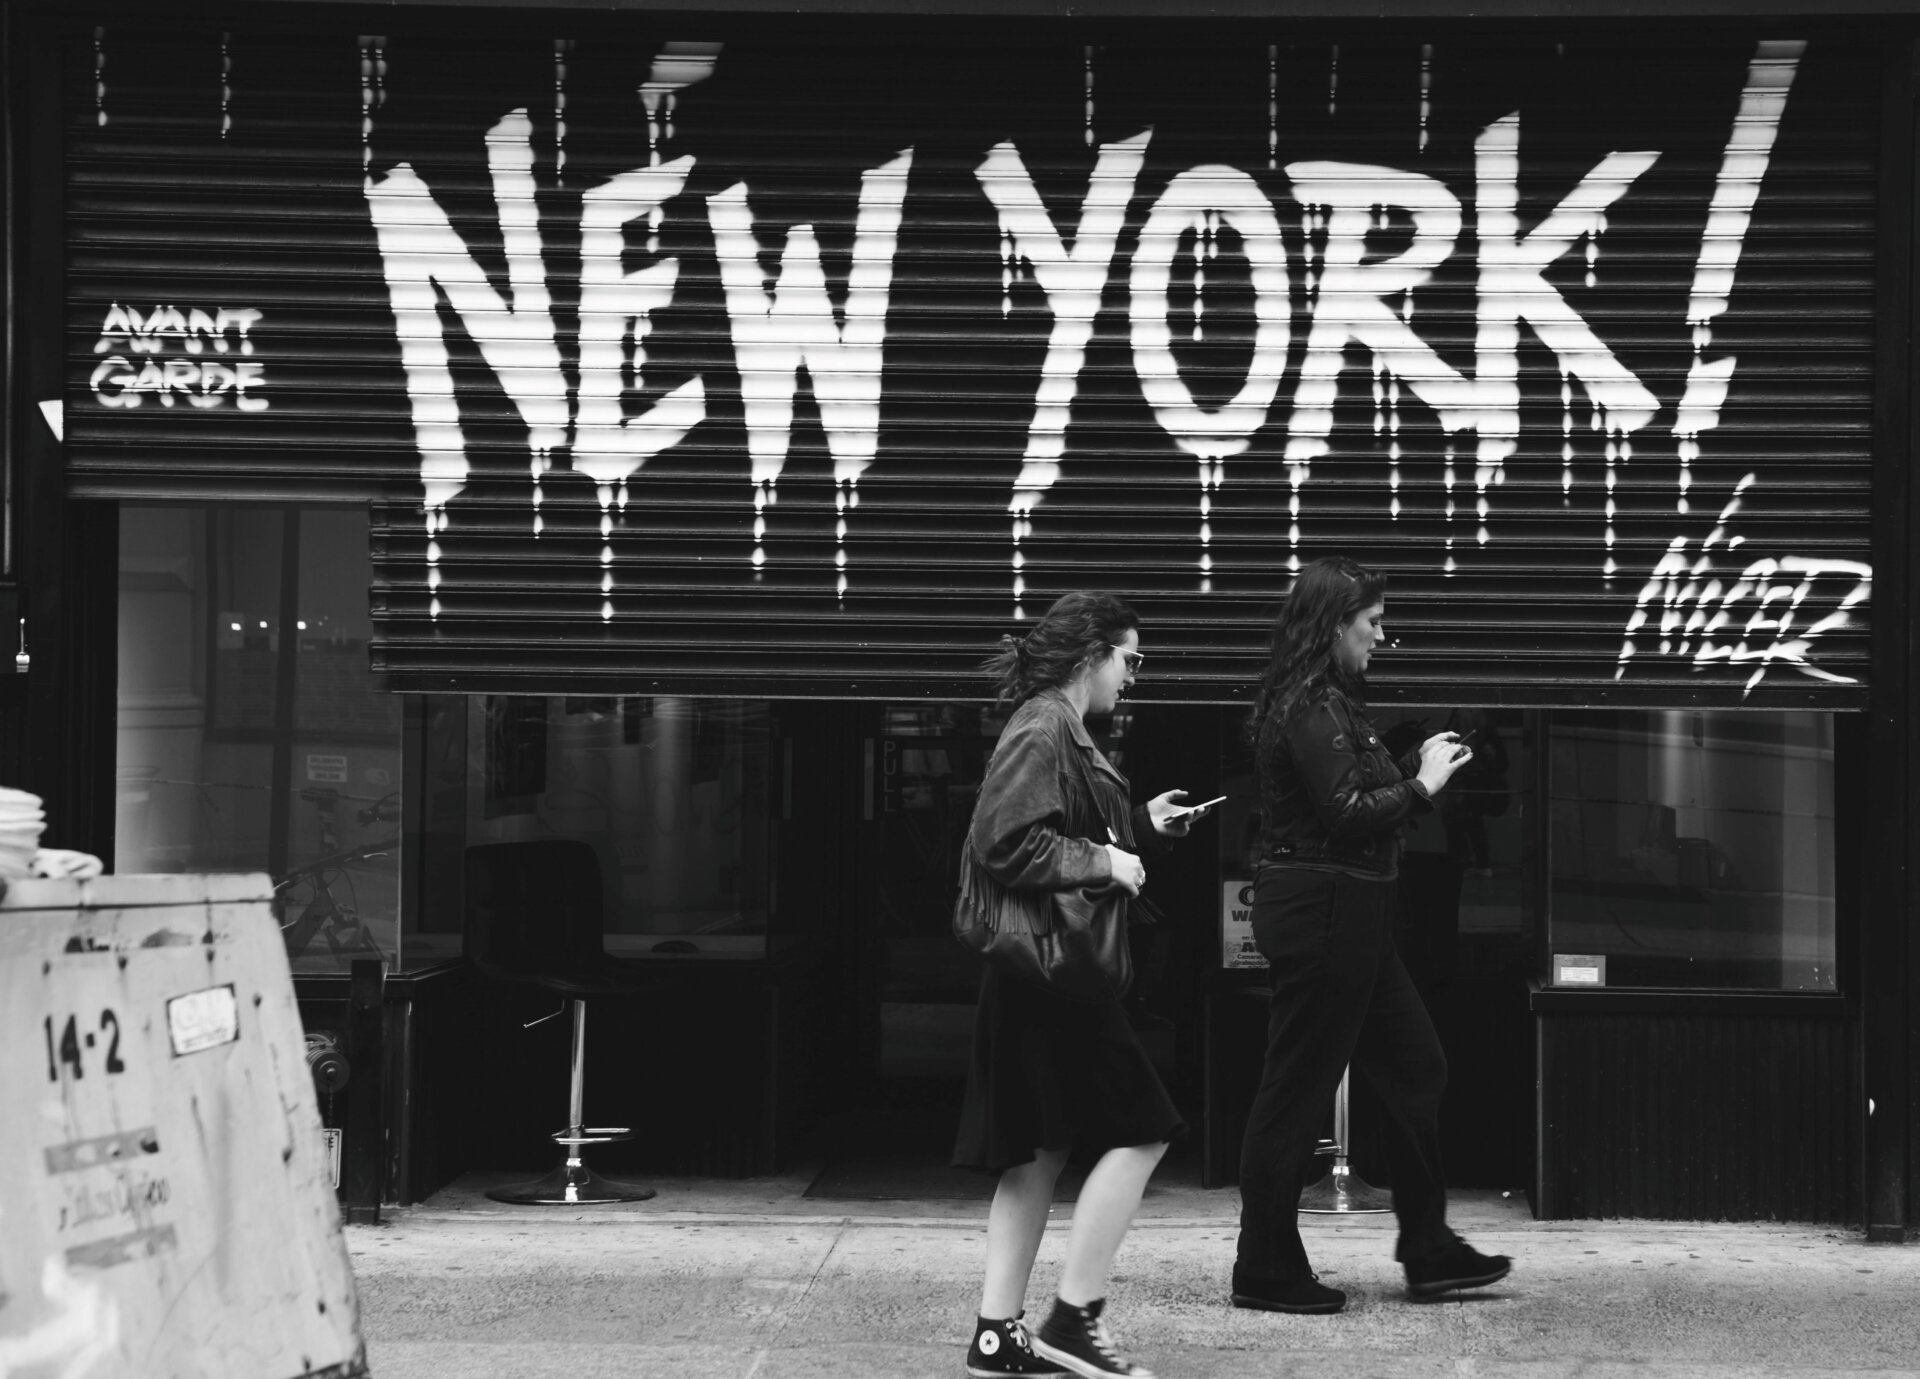 New York graffiti